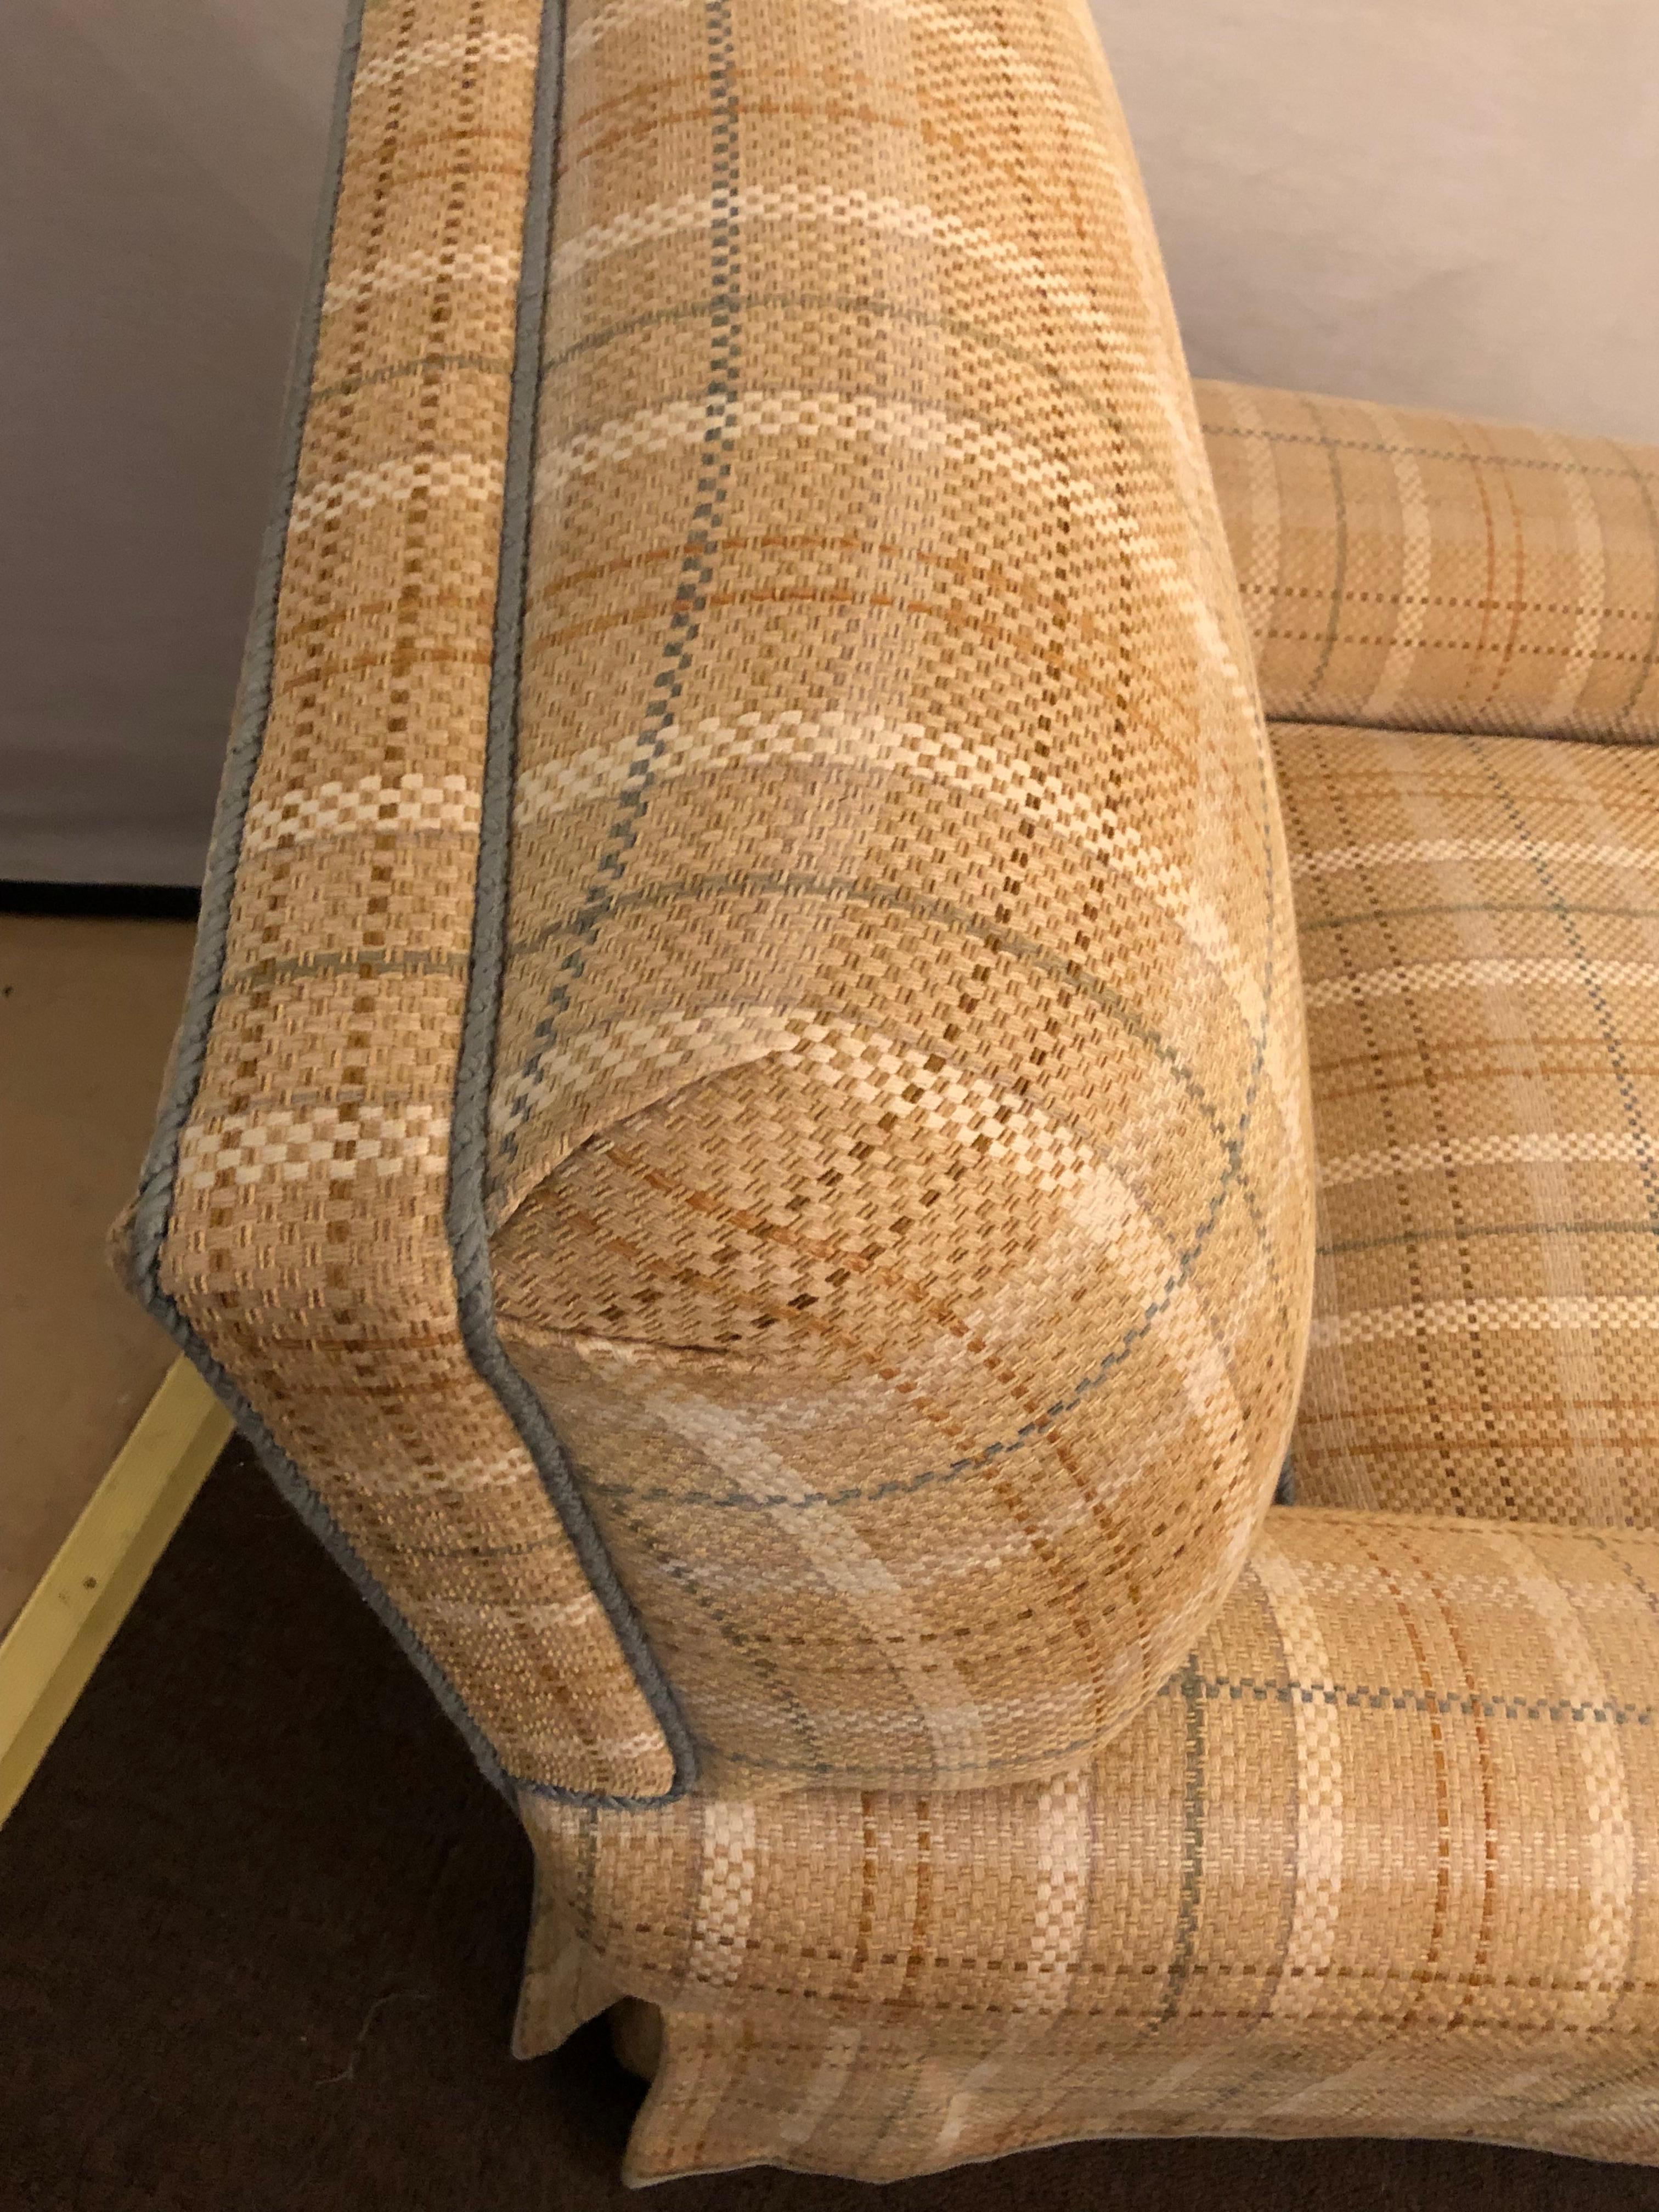 plaid lounge chair